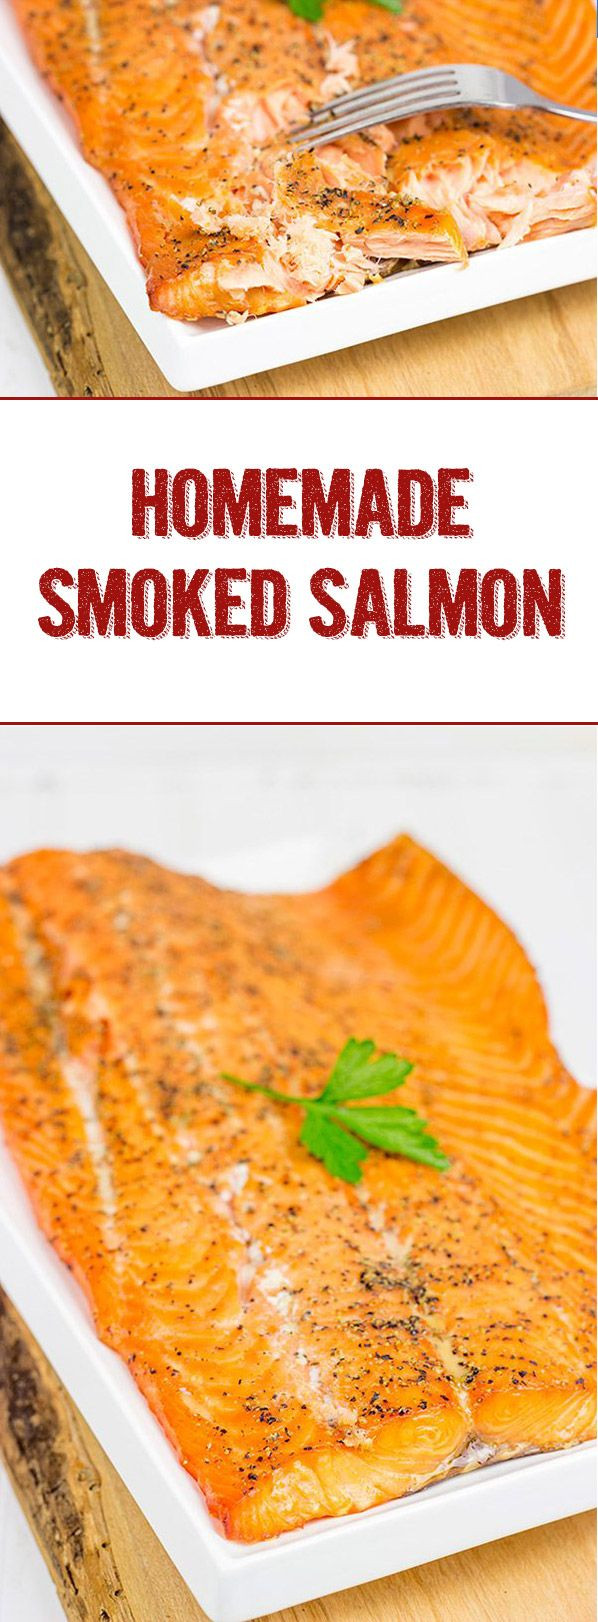 Smoked Salmon Dinner Recipe
 Maple Smoked Salmon Recipe